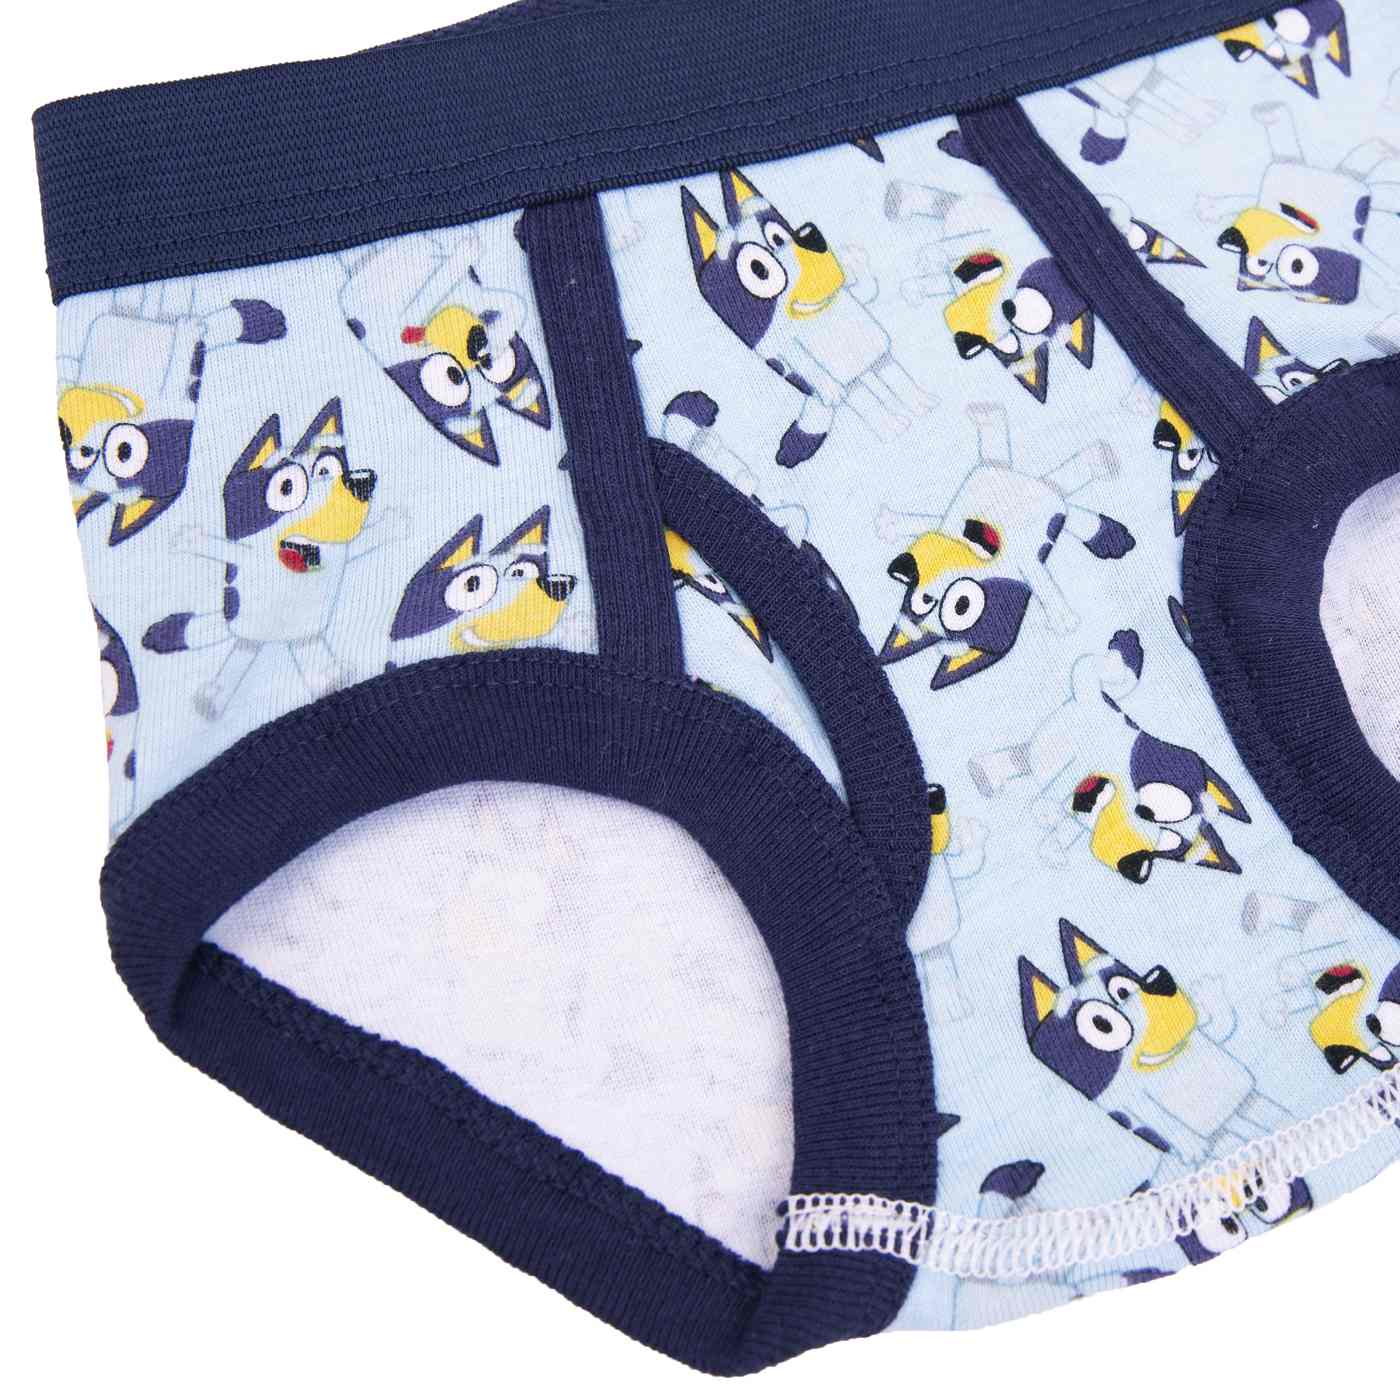 Disney 7 Bluey Toddler Cotton Briefs - Boys - Shop Underwear at H-E-B